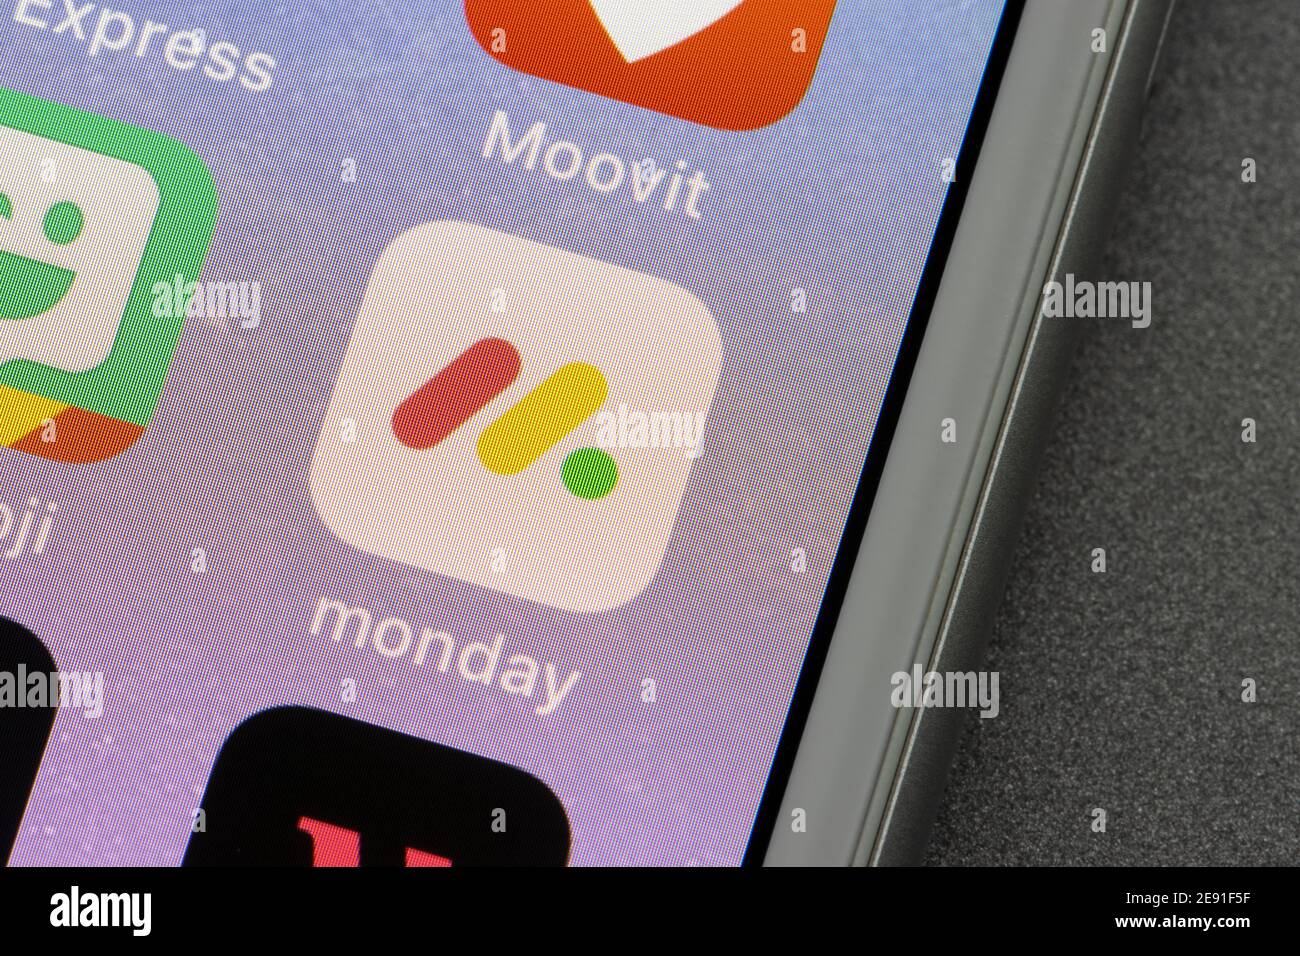 Das Symbol für die Montag-App wird auf einem iPhone angezeigt. Monday.com ist ein Projektmanagement-Tool, mit dem Unternehmen Aufgaben, Projekte und Teamarbeit verwalten können. Stockfoto